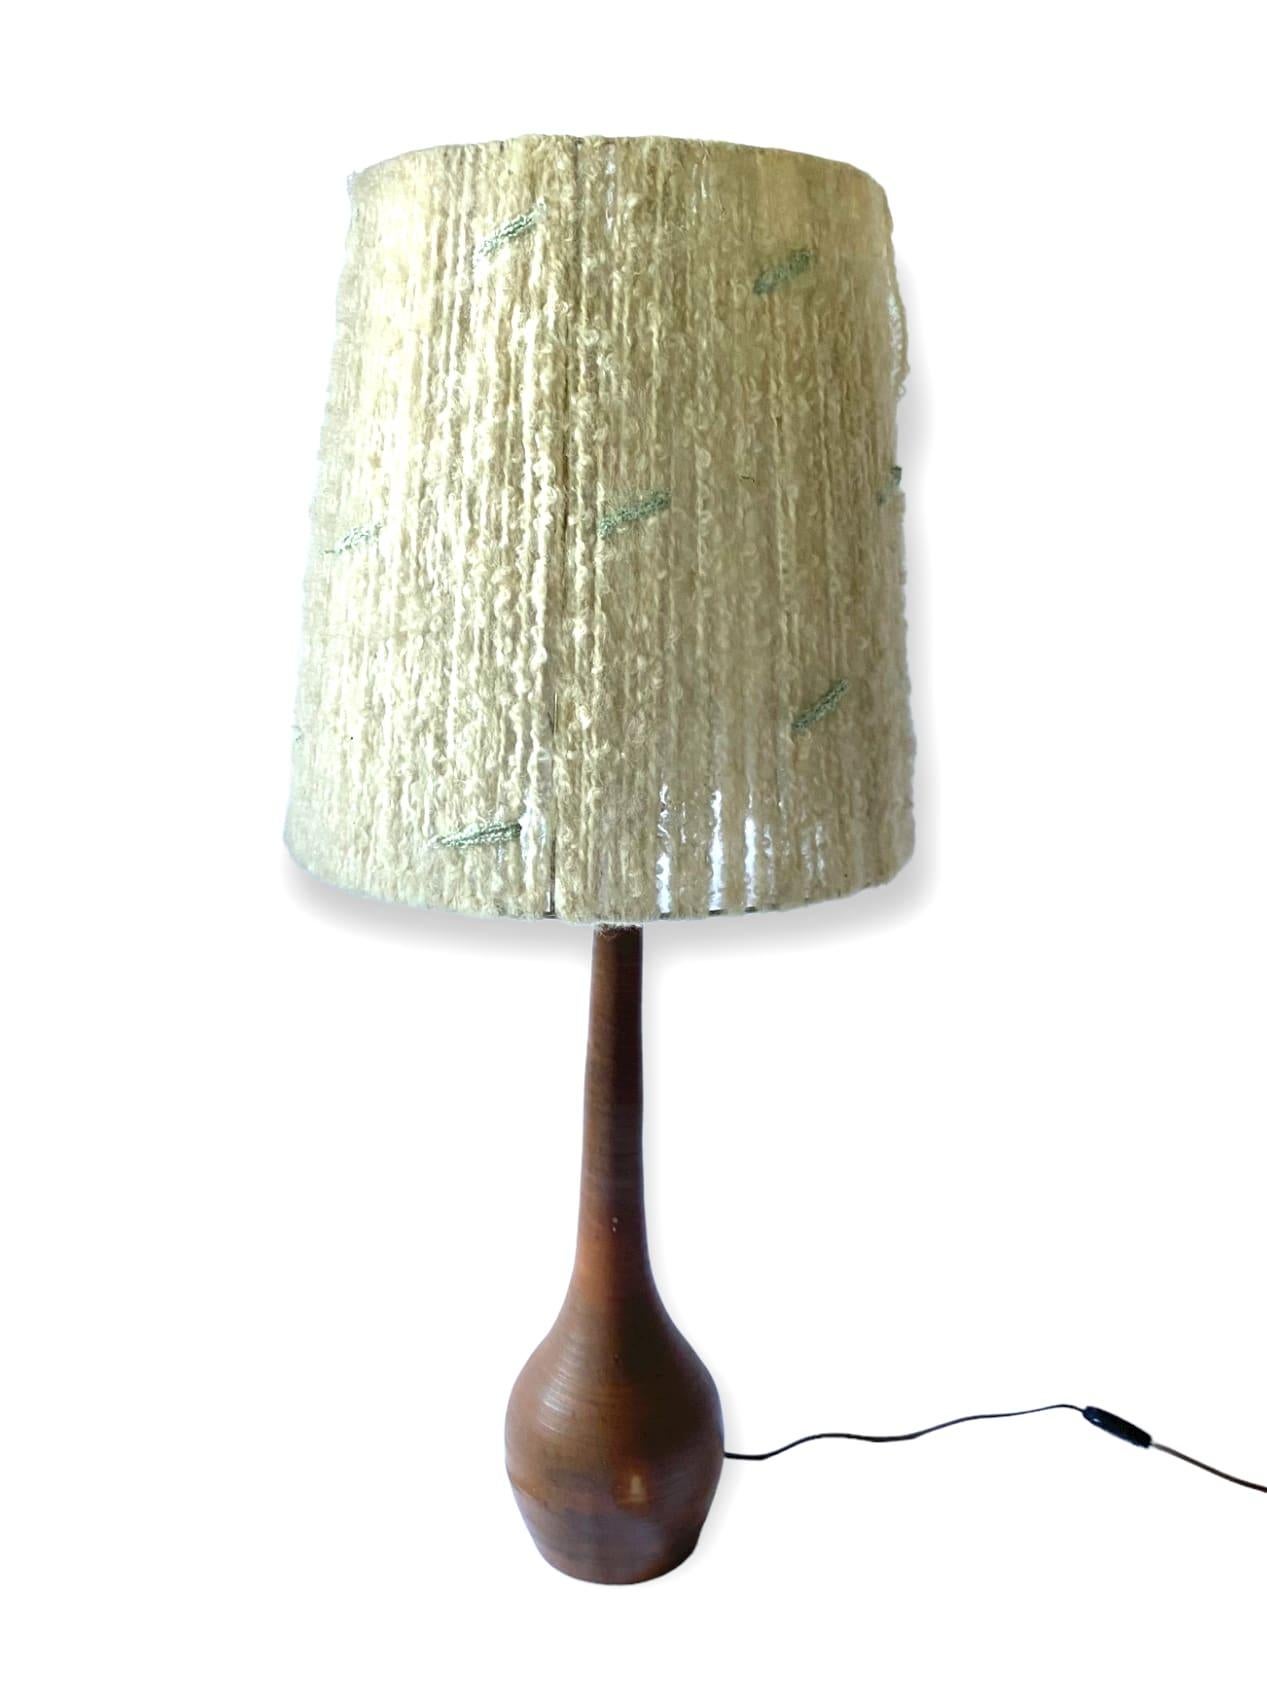 Midcentury Monumental Glazed Terracotta Table Lamp, France, 1950s For Sale 5